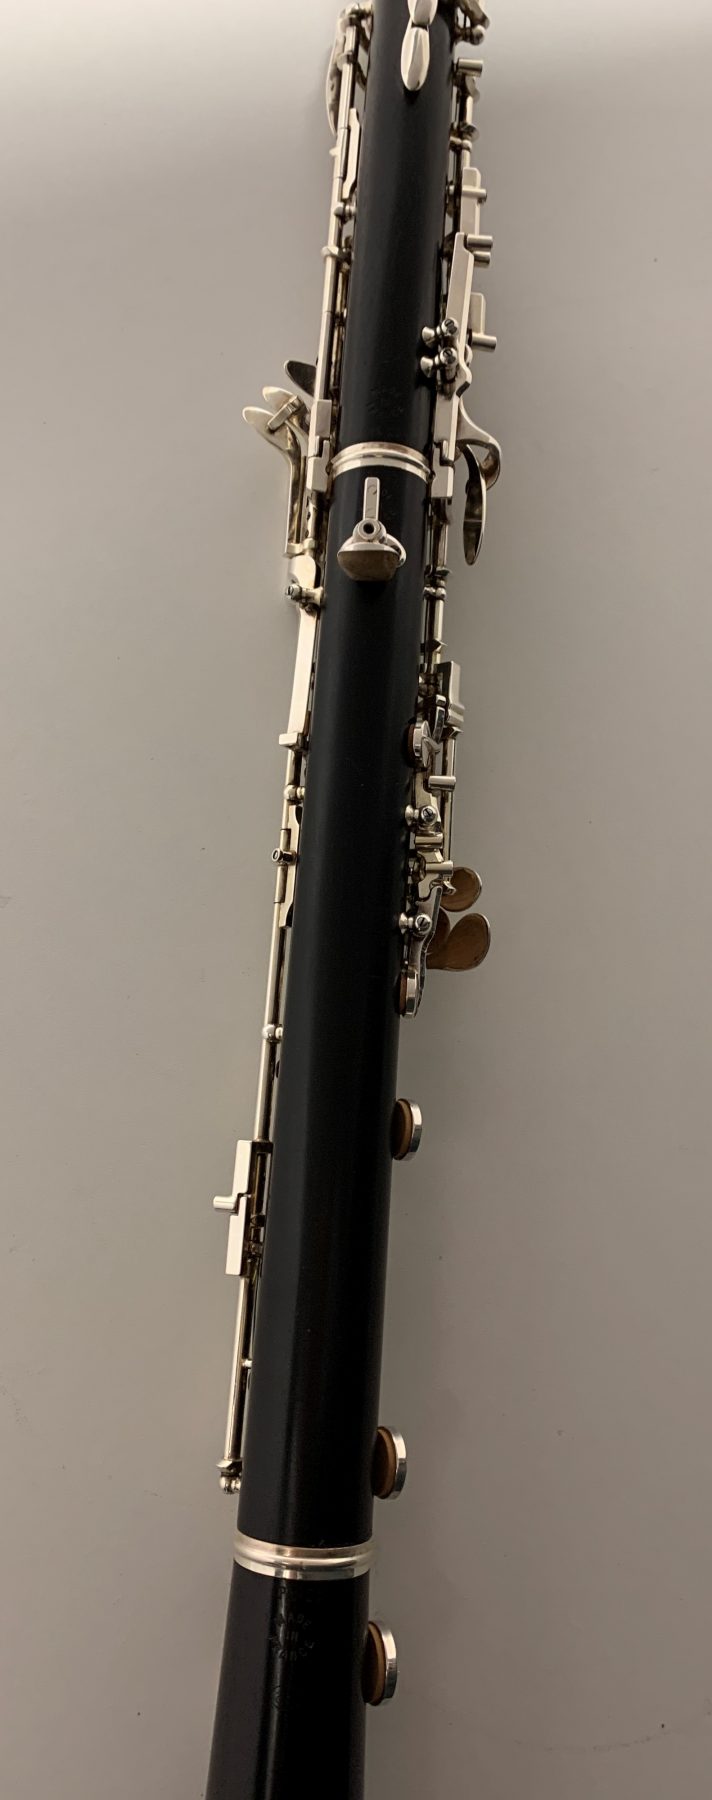 loree oboe serial numbers year